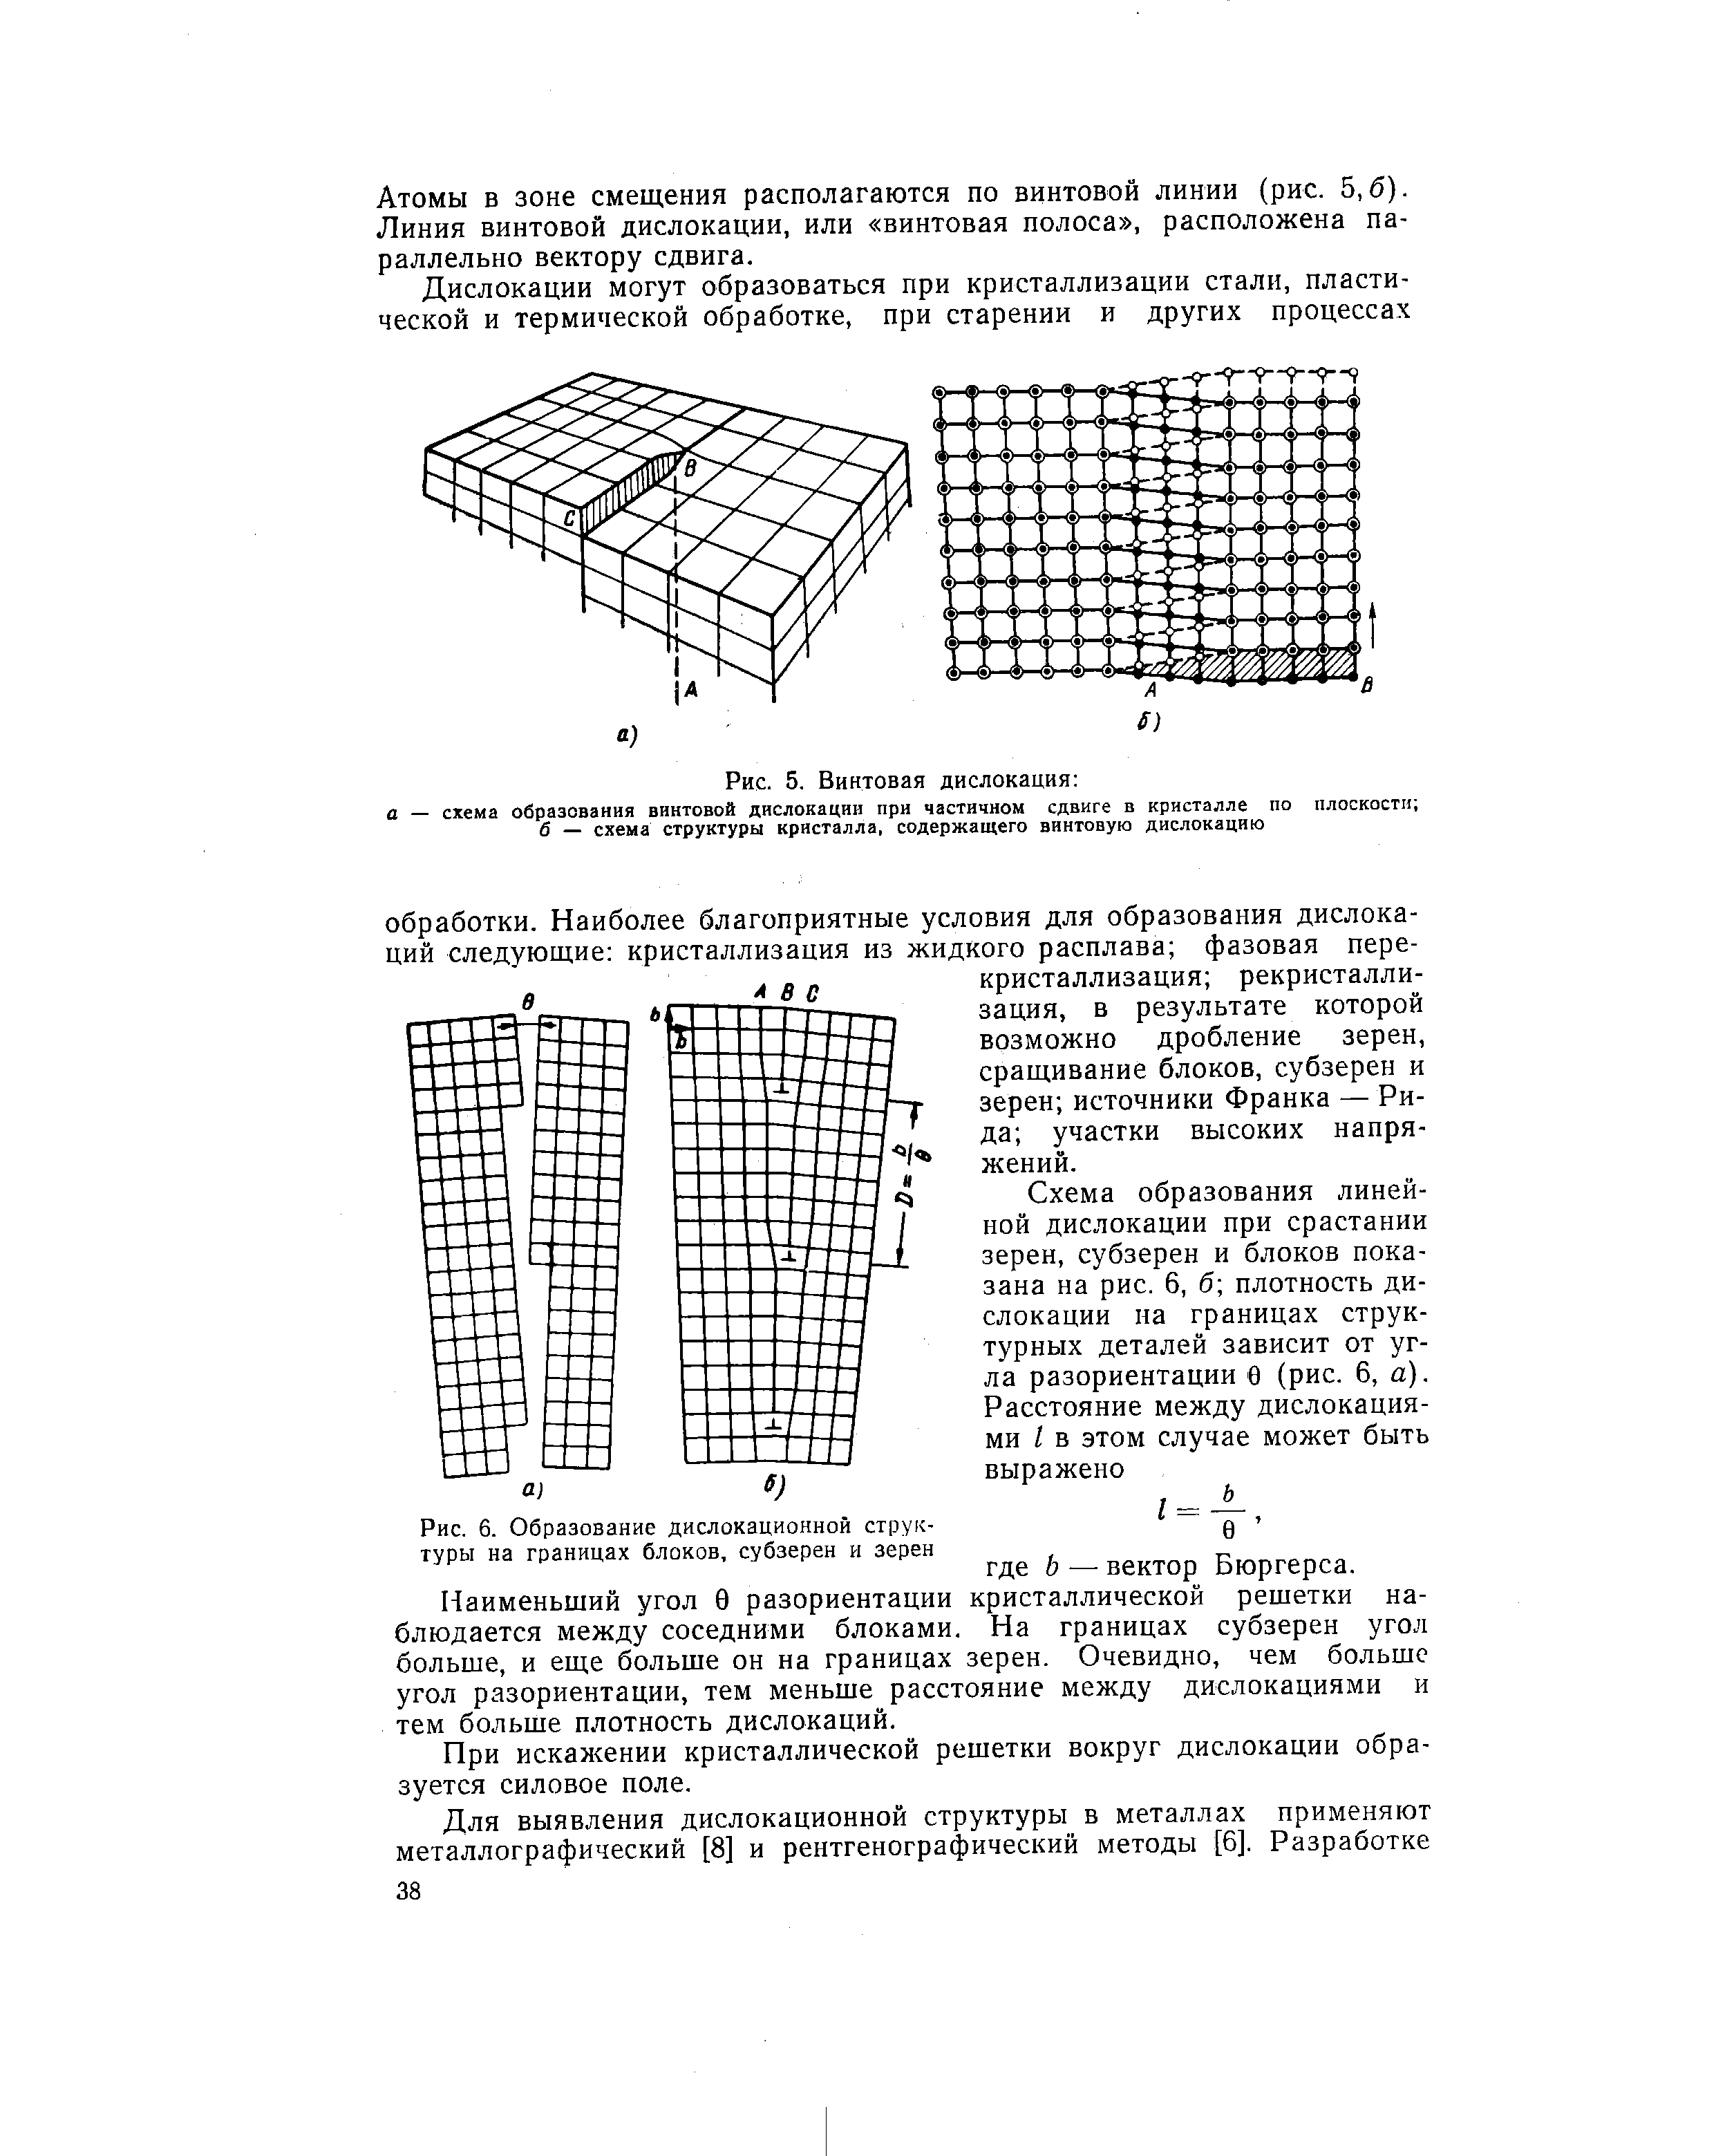 Рис. 6. Образование <a href="/info/1785">дислокационной структуры</a> на границах блоков, субзерен и зерен
